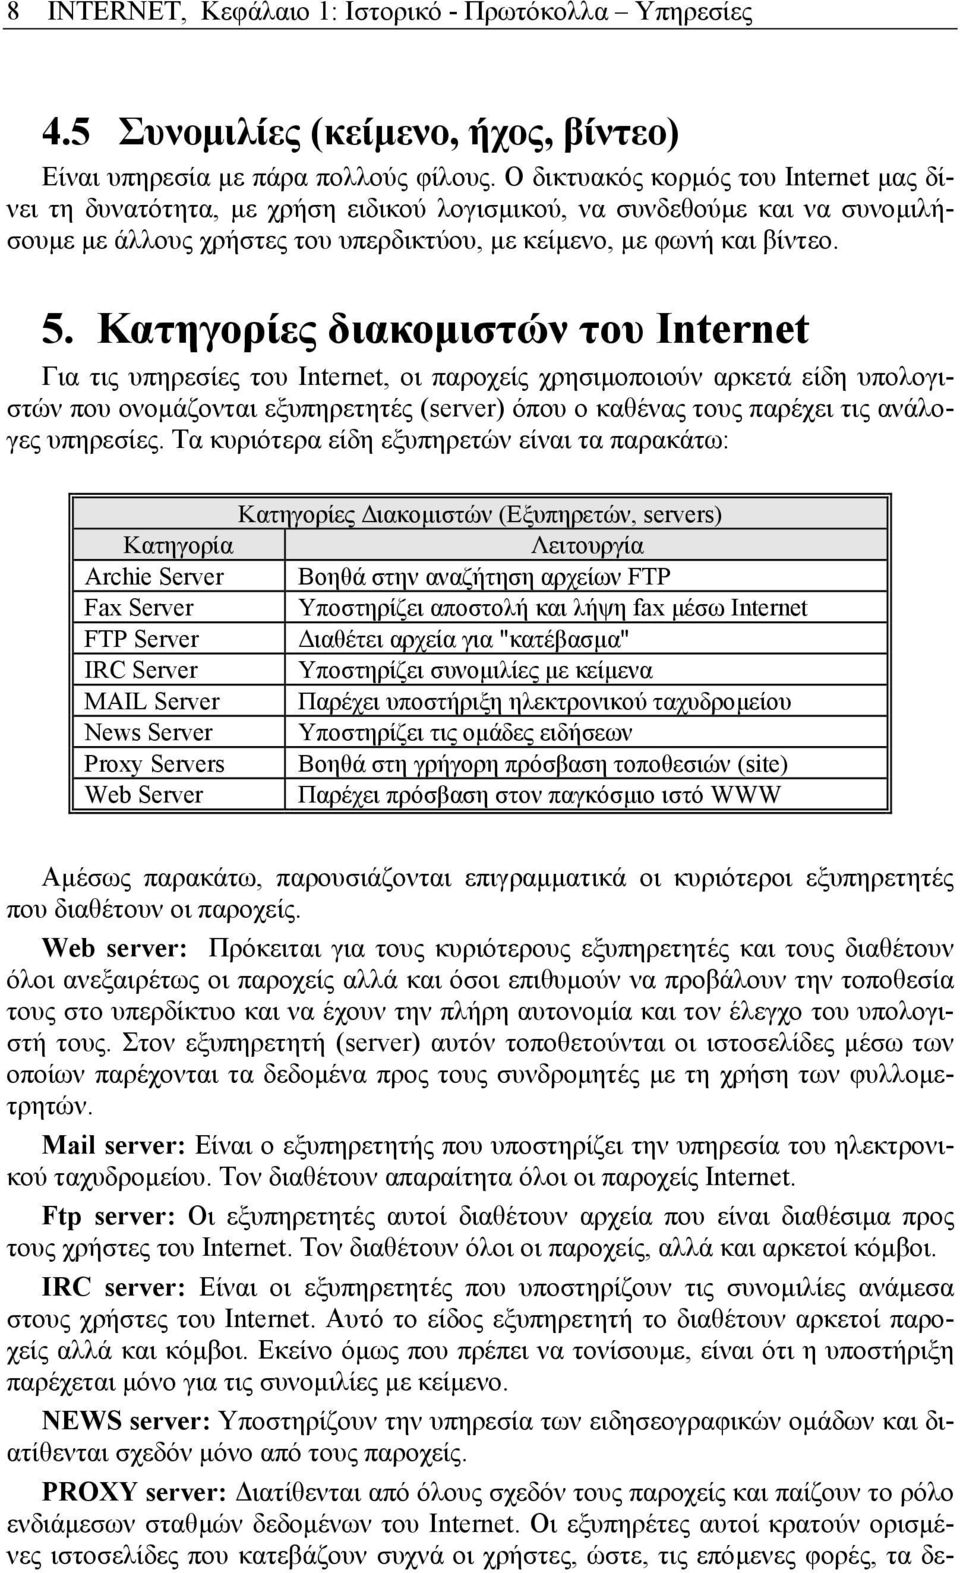 Κατηγορίες διακοµιστών του Internet Για τις υπηρεσίες του Internet, οι παροχείς χρησιµοποιούν αρκετά είδη υπολογιστών που ονοµάζονται εξυπηρετητές (server) όπου ο καθένας τους παρέχει τις ανάλογες